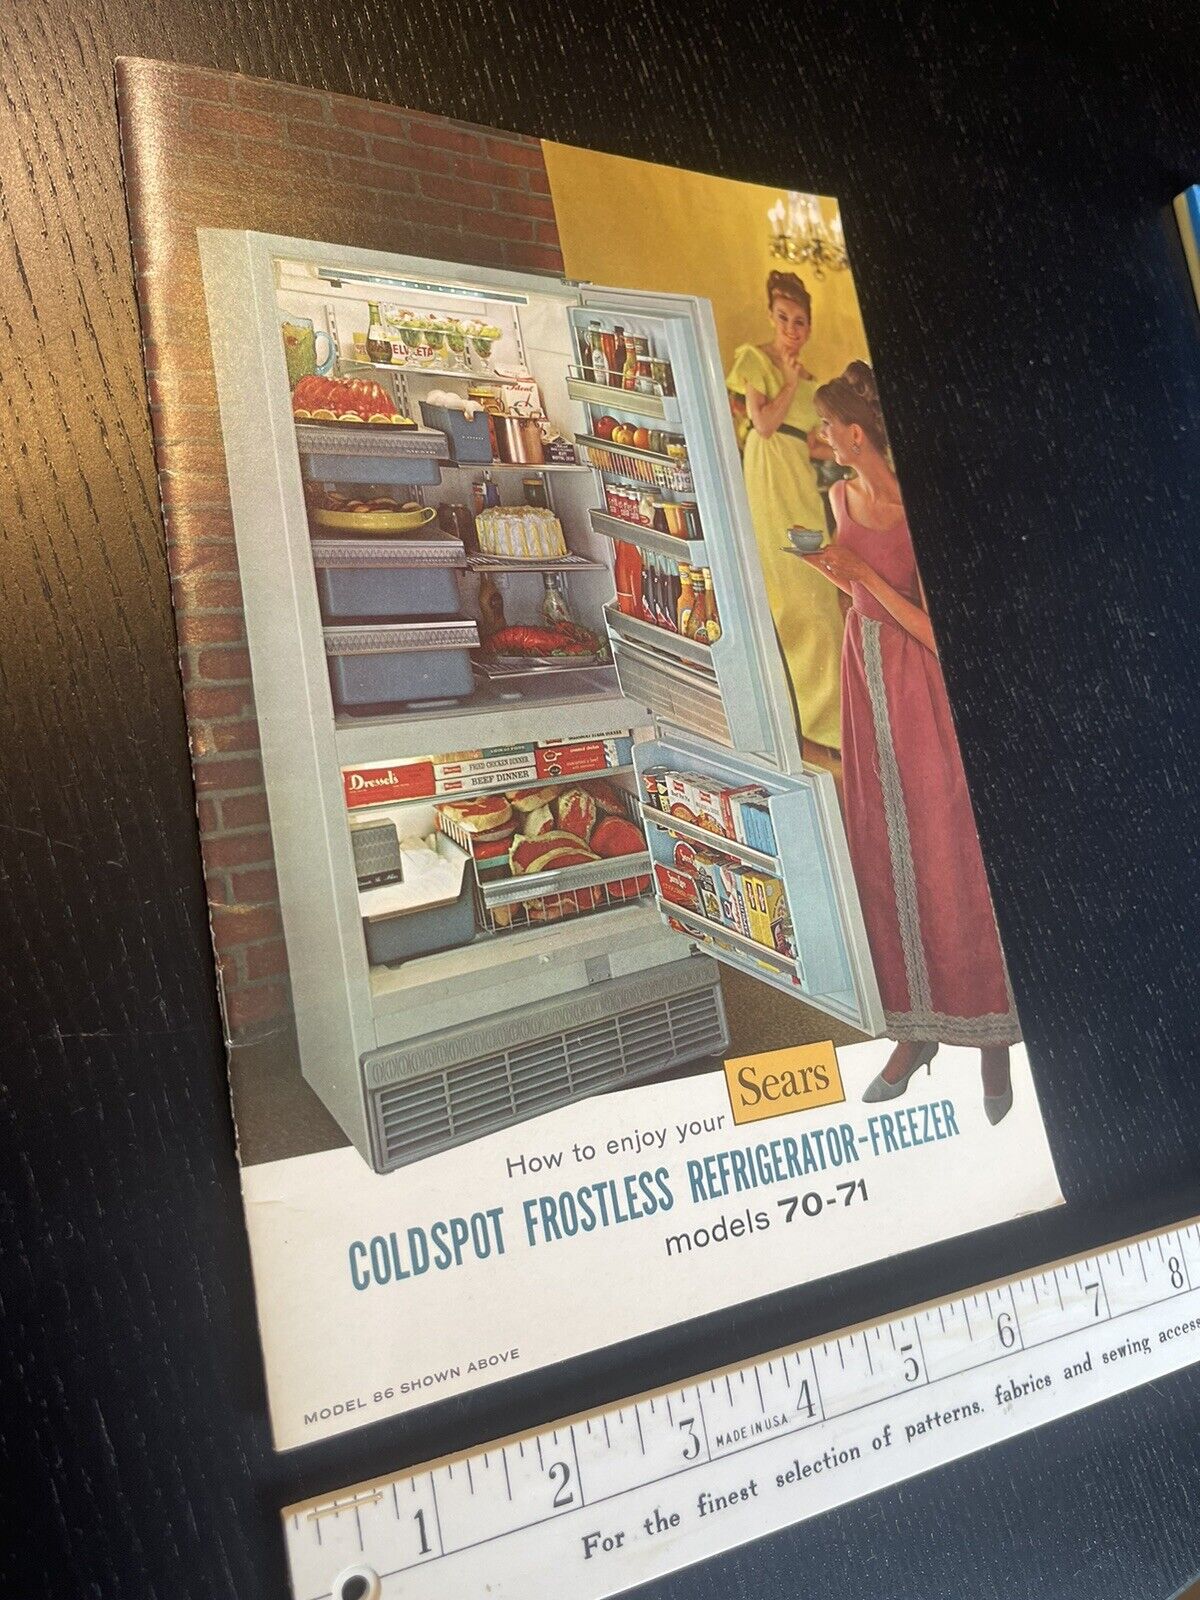 Sears Coldspot Frostless Refrigerator & Freezer Old Vintage Manual Model 70-71